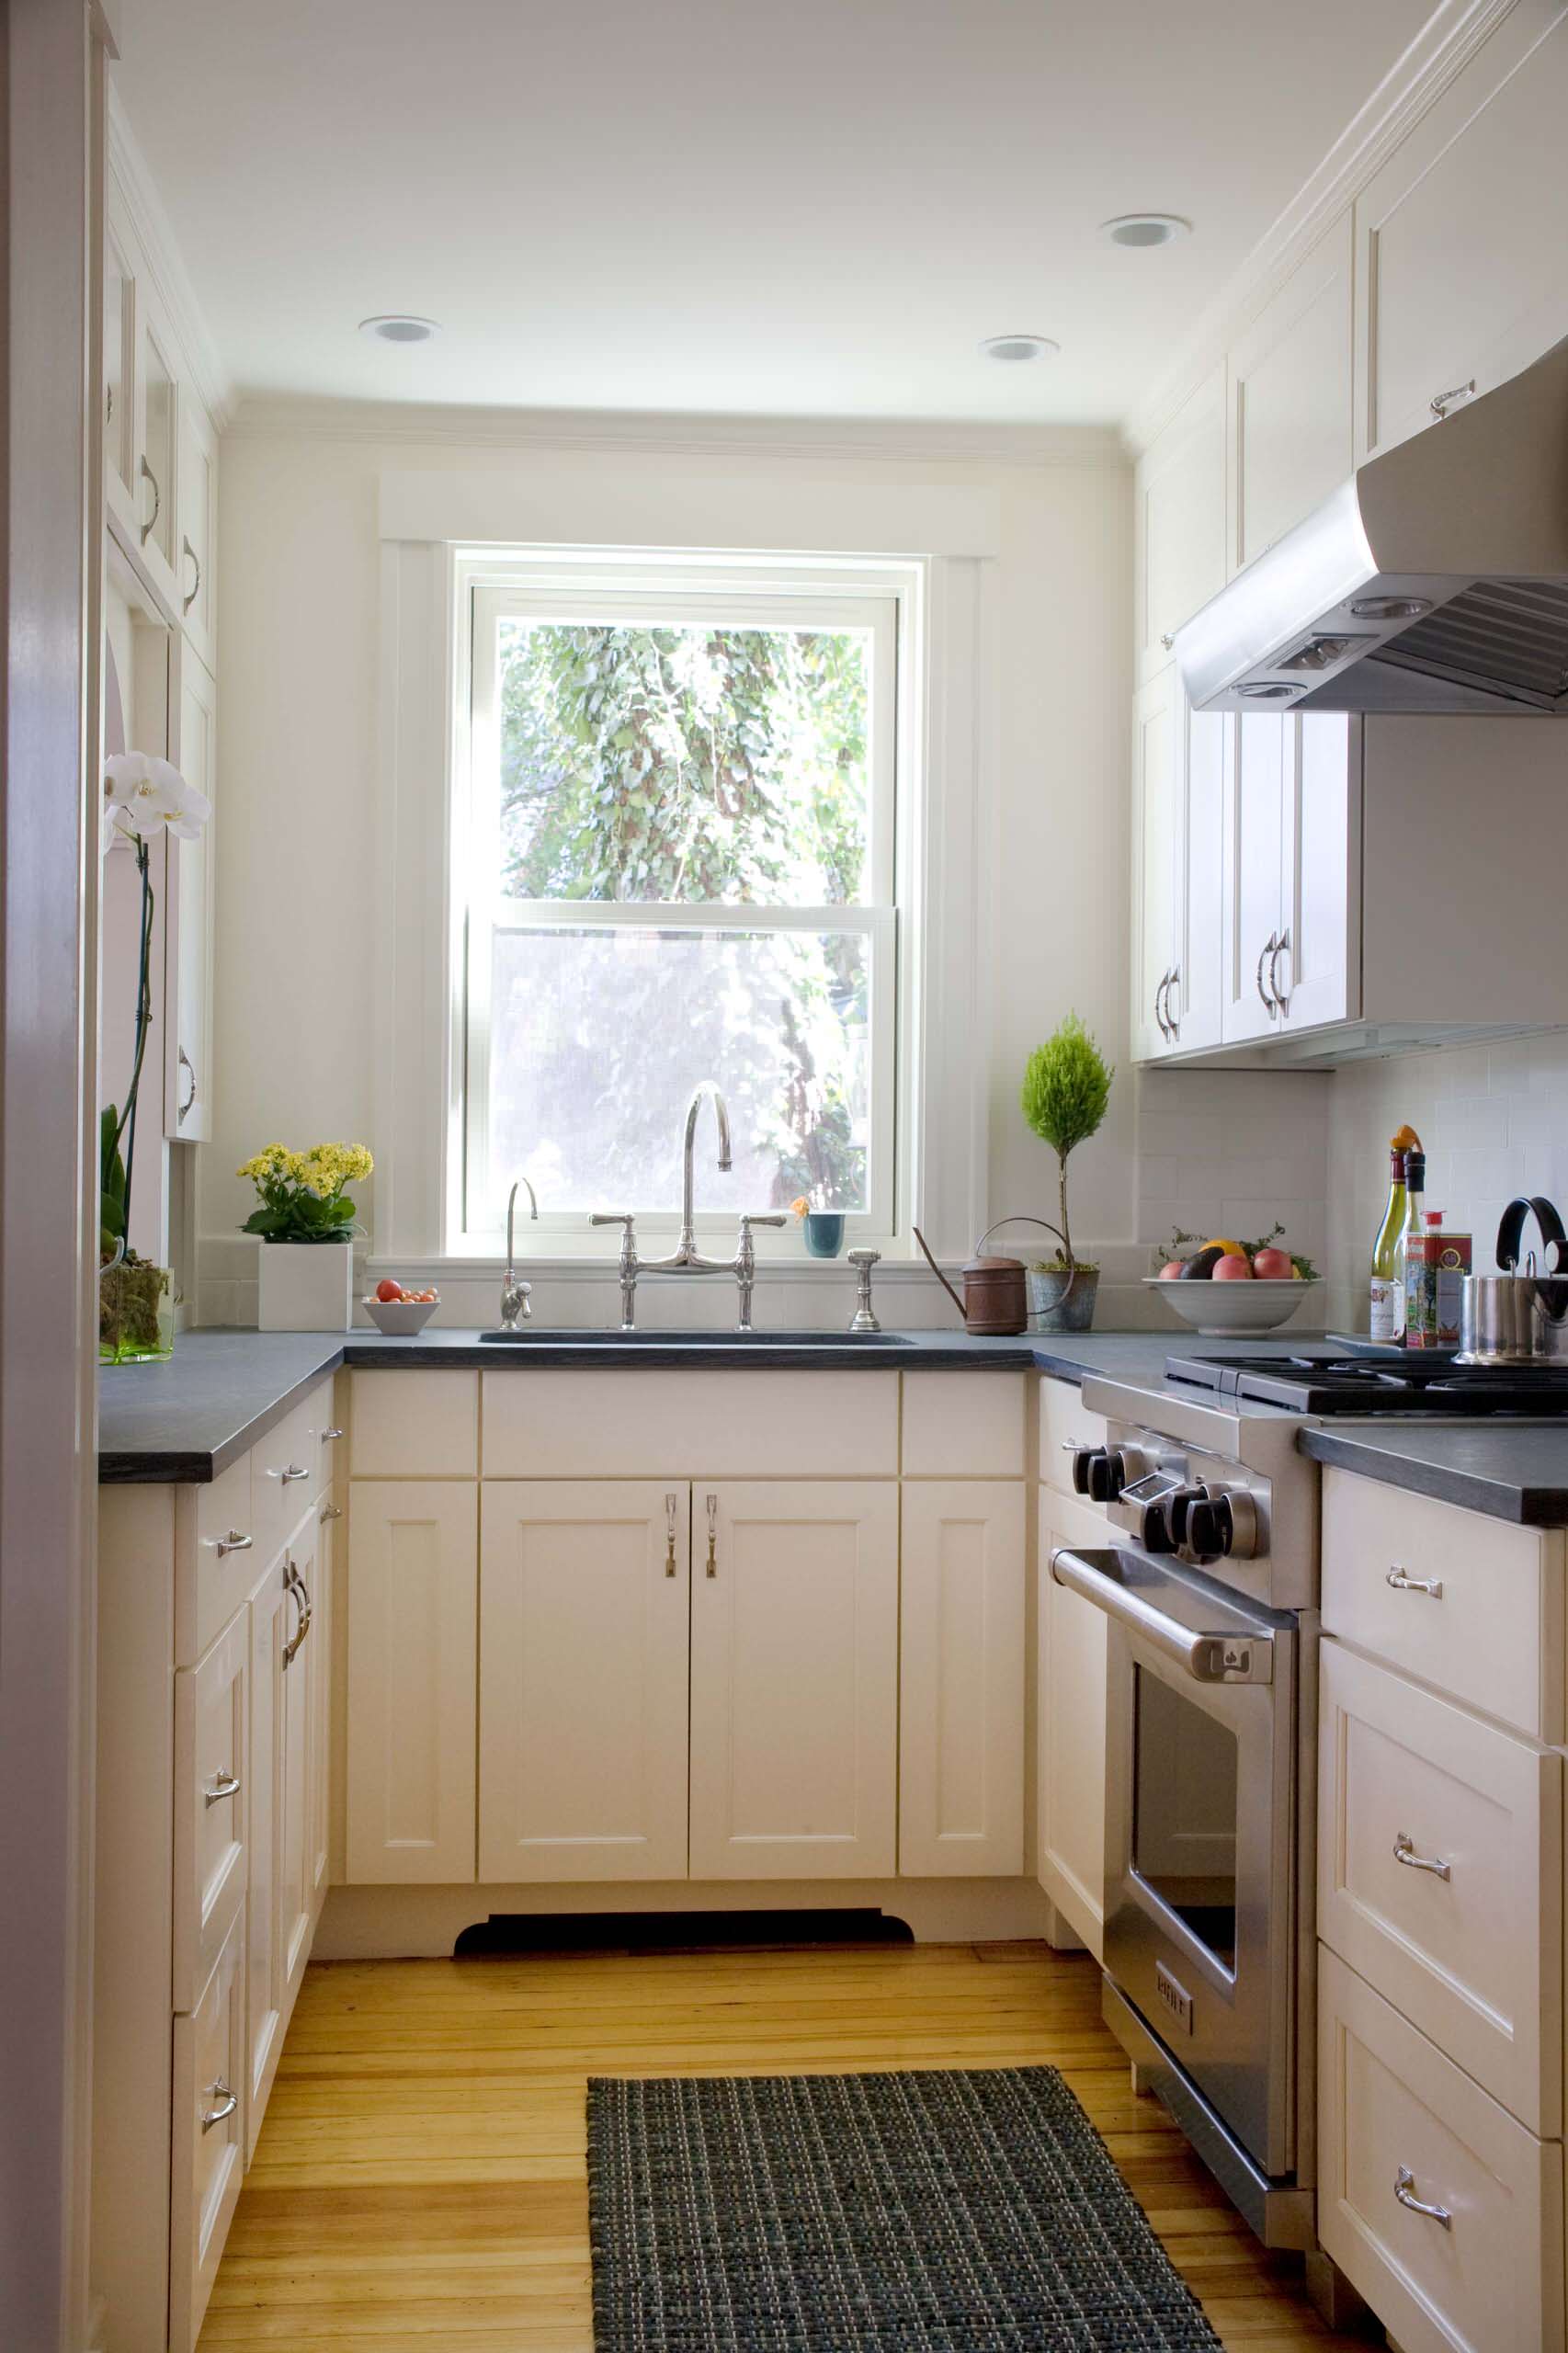 small modular kitchen: photos, designs & ideas